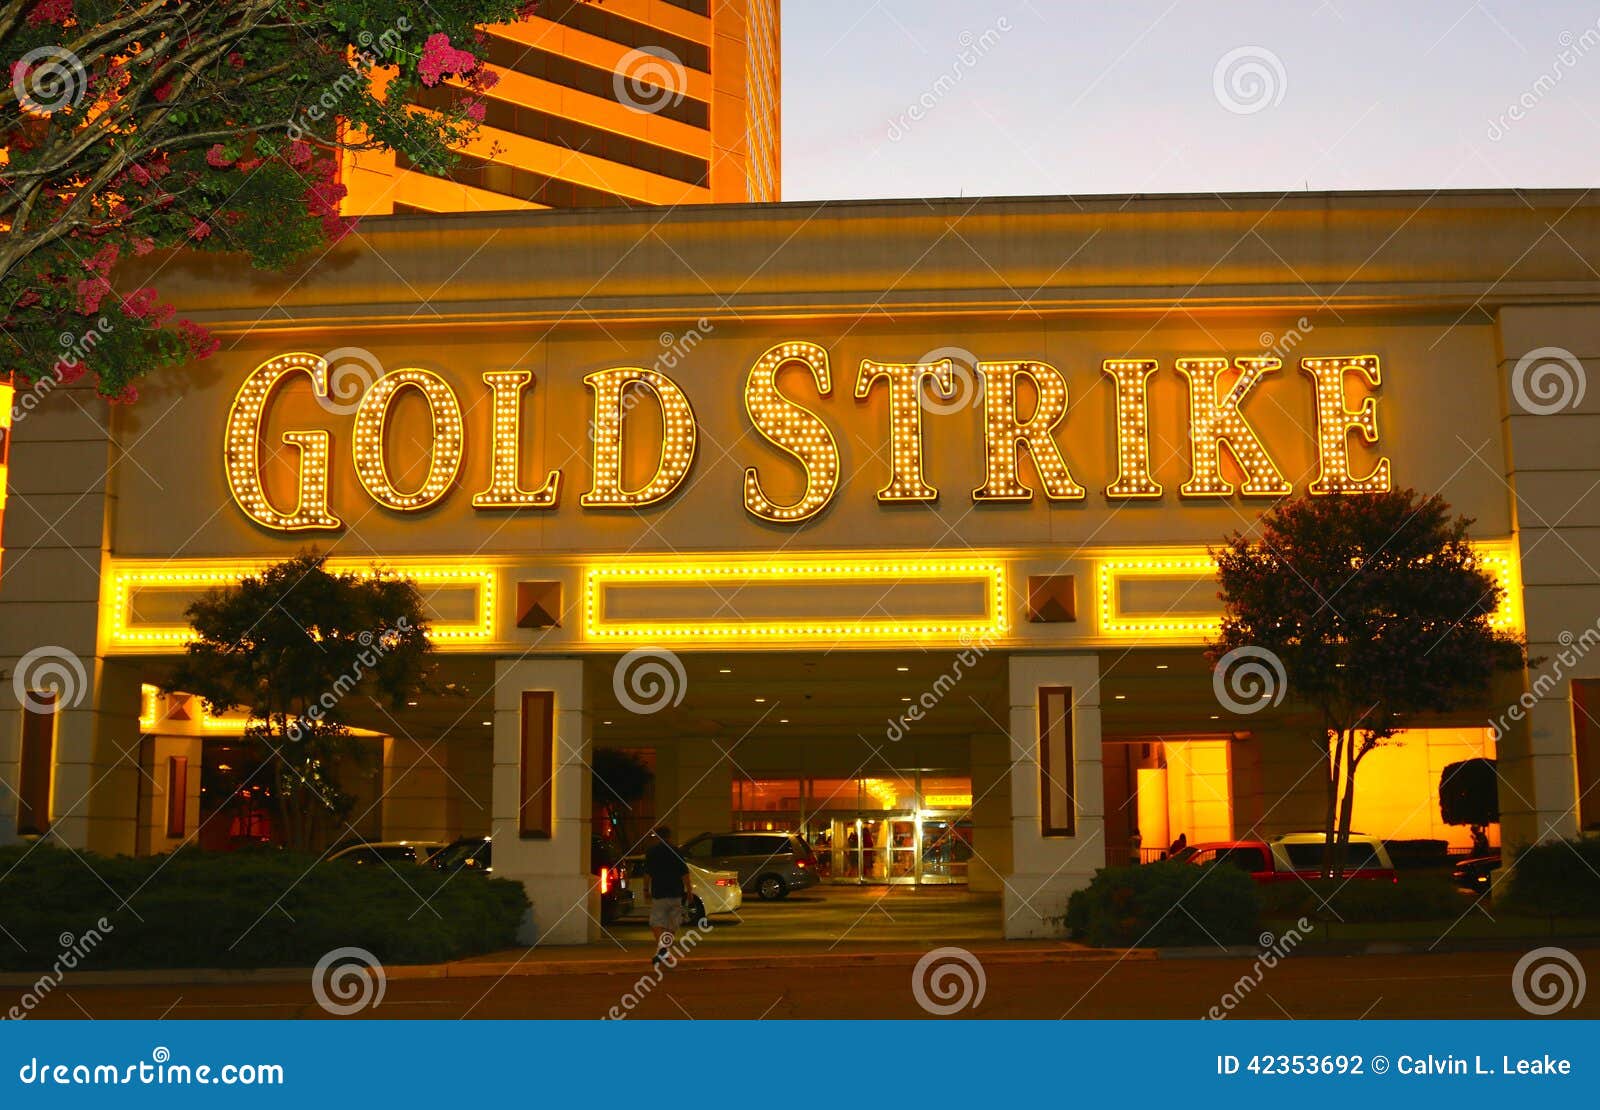 gold strike inn